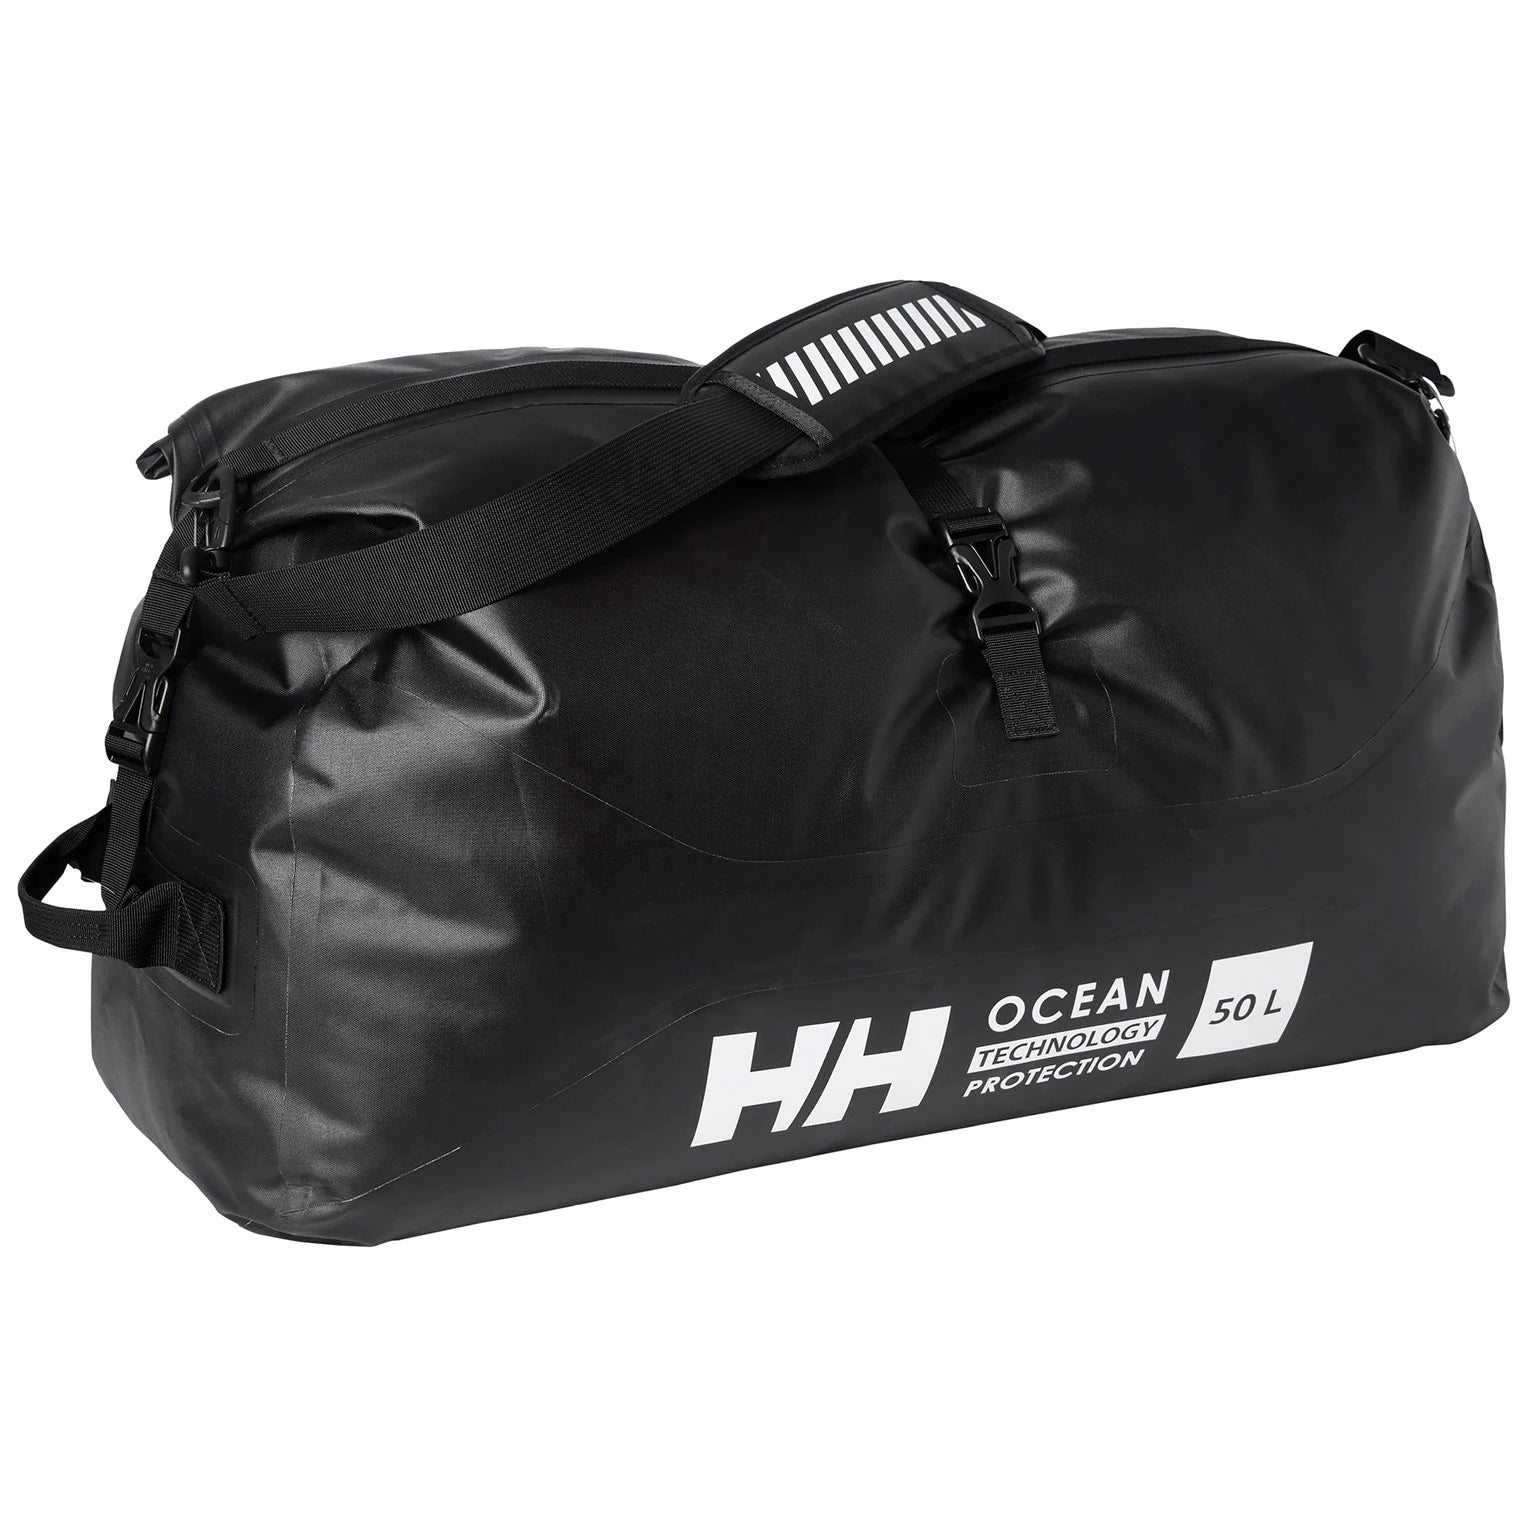 Helly Hansen Offshore Waterproof Duffel Bag 50L - Ebony